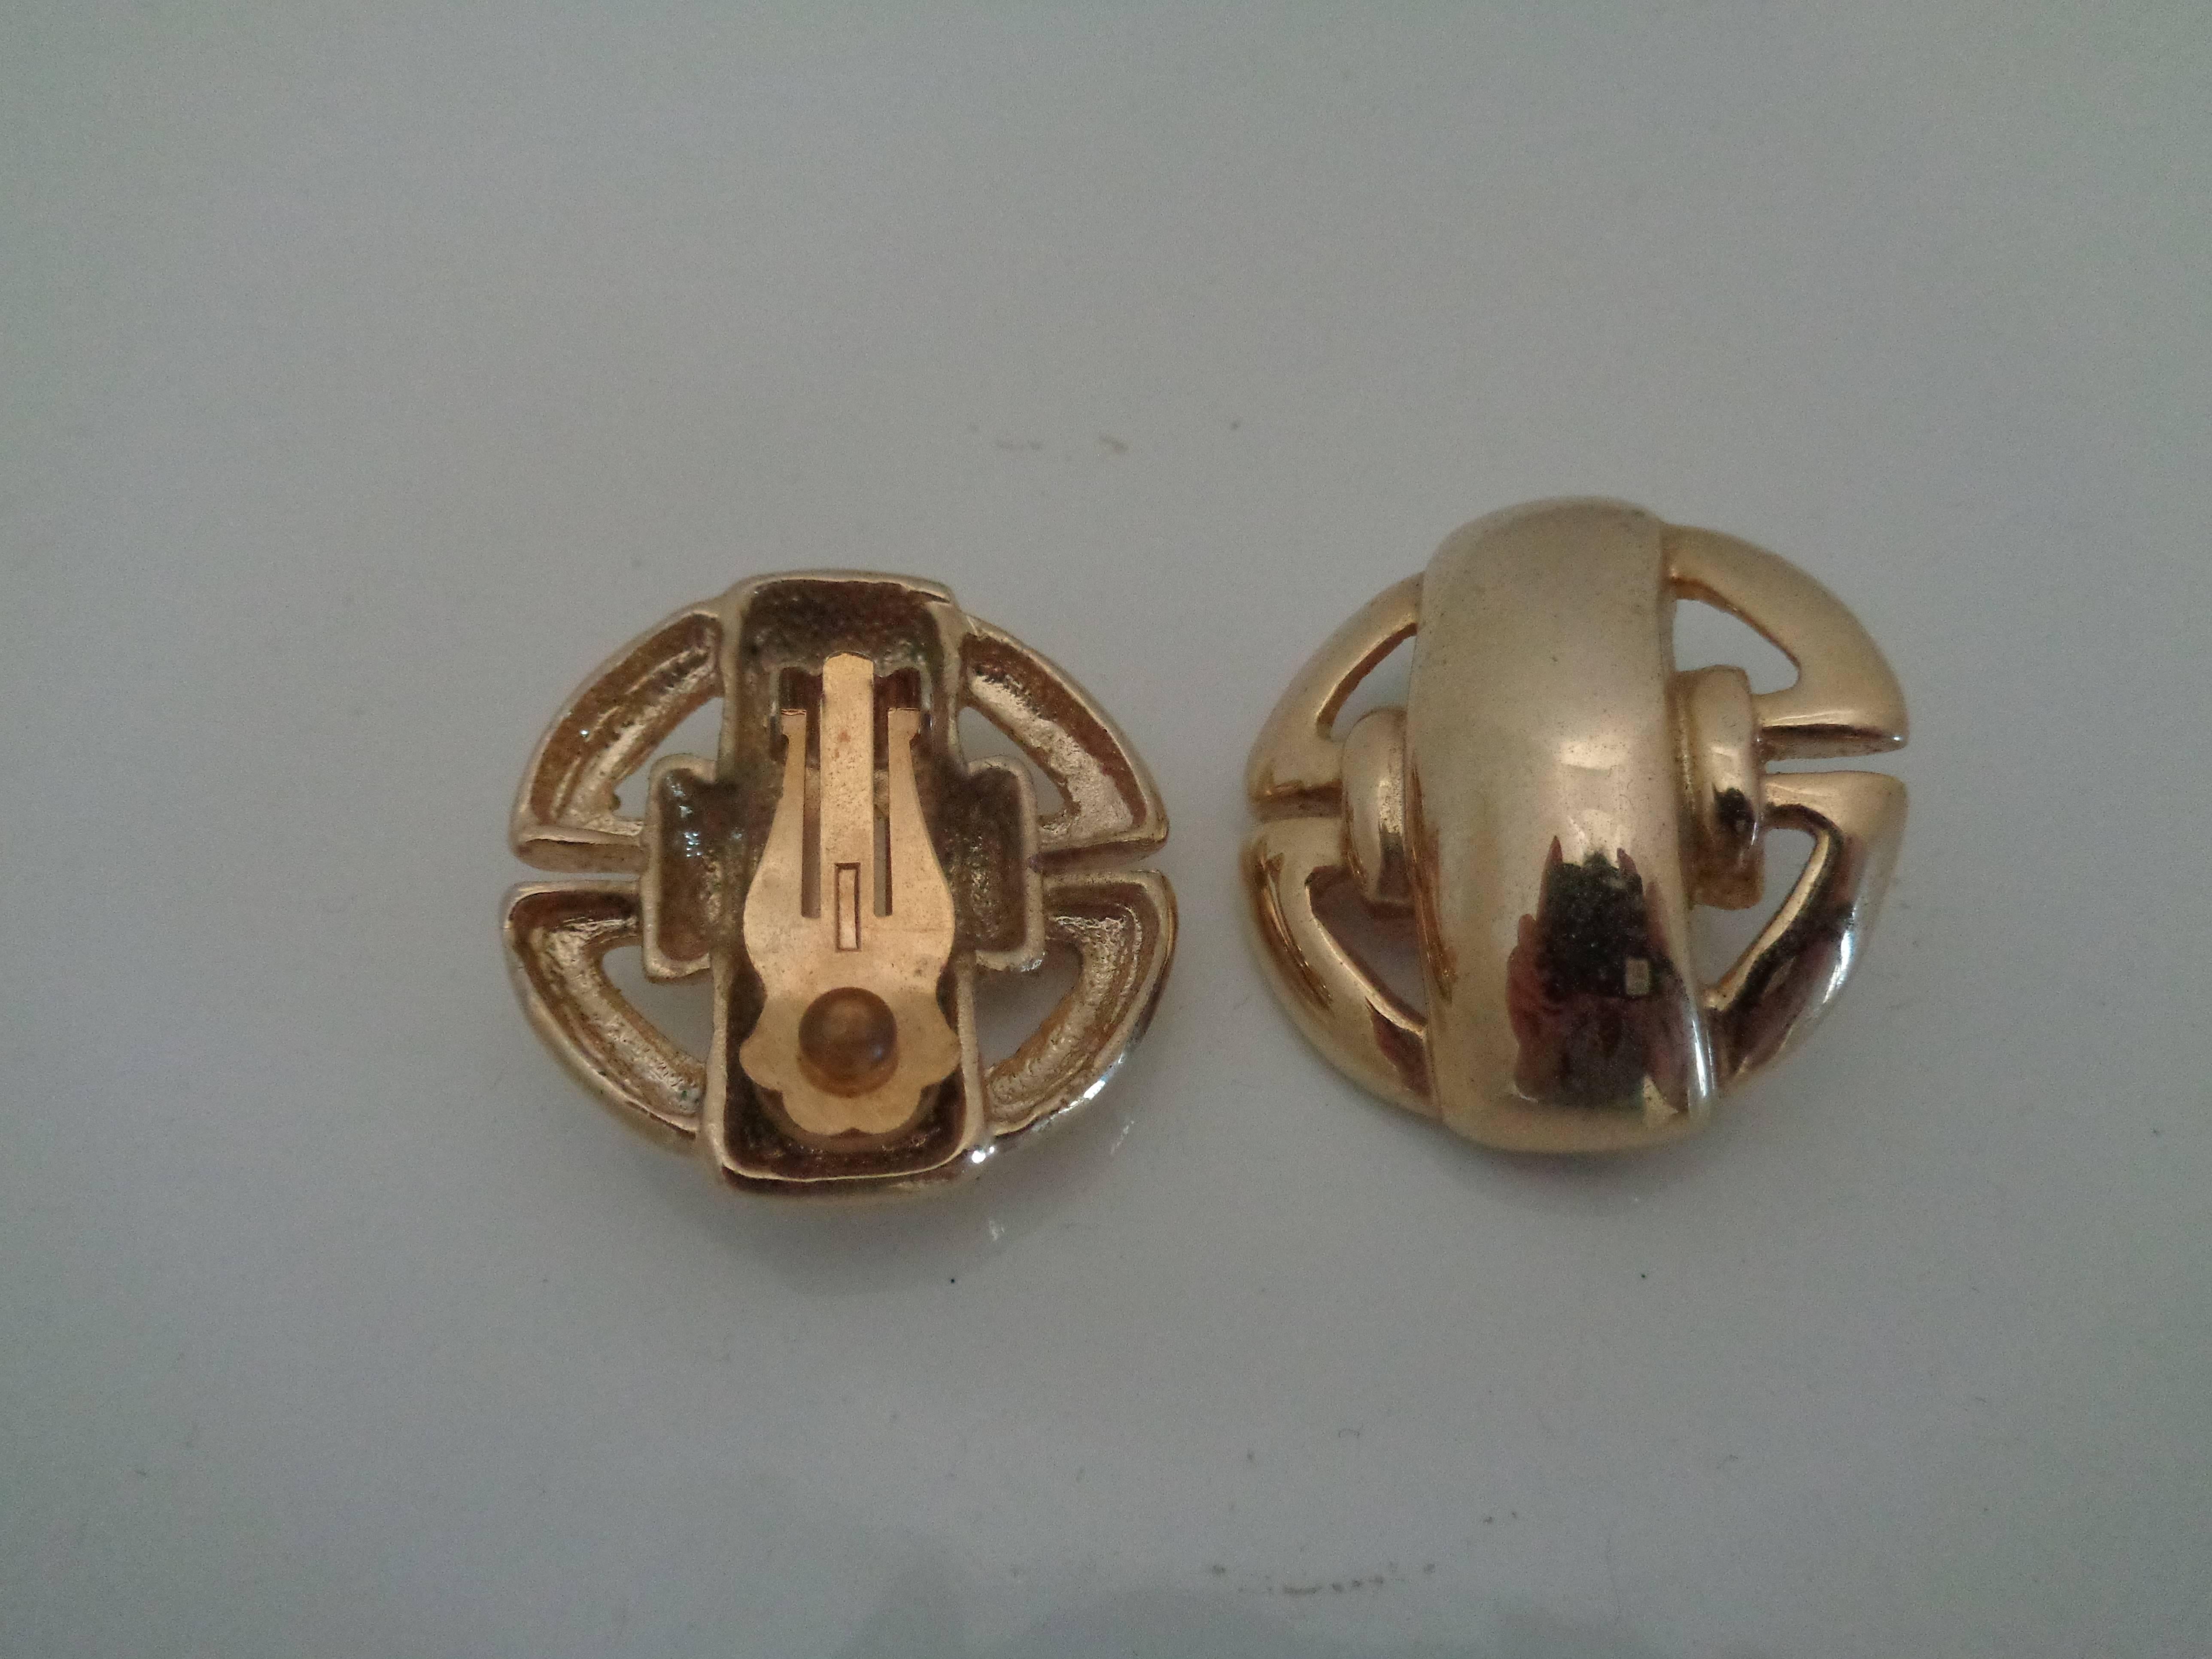 boucles d'oreilles à clip en or des années 1980

Mesures : 3 cm x 3 cm